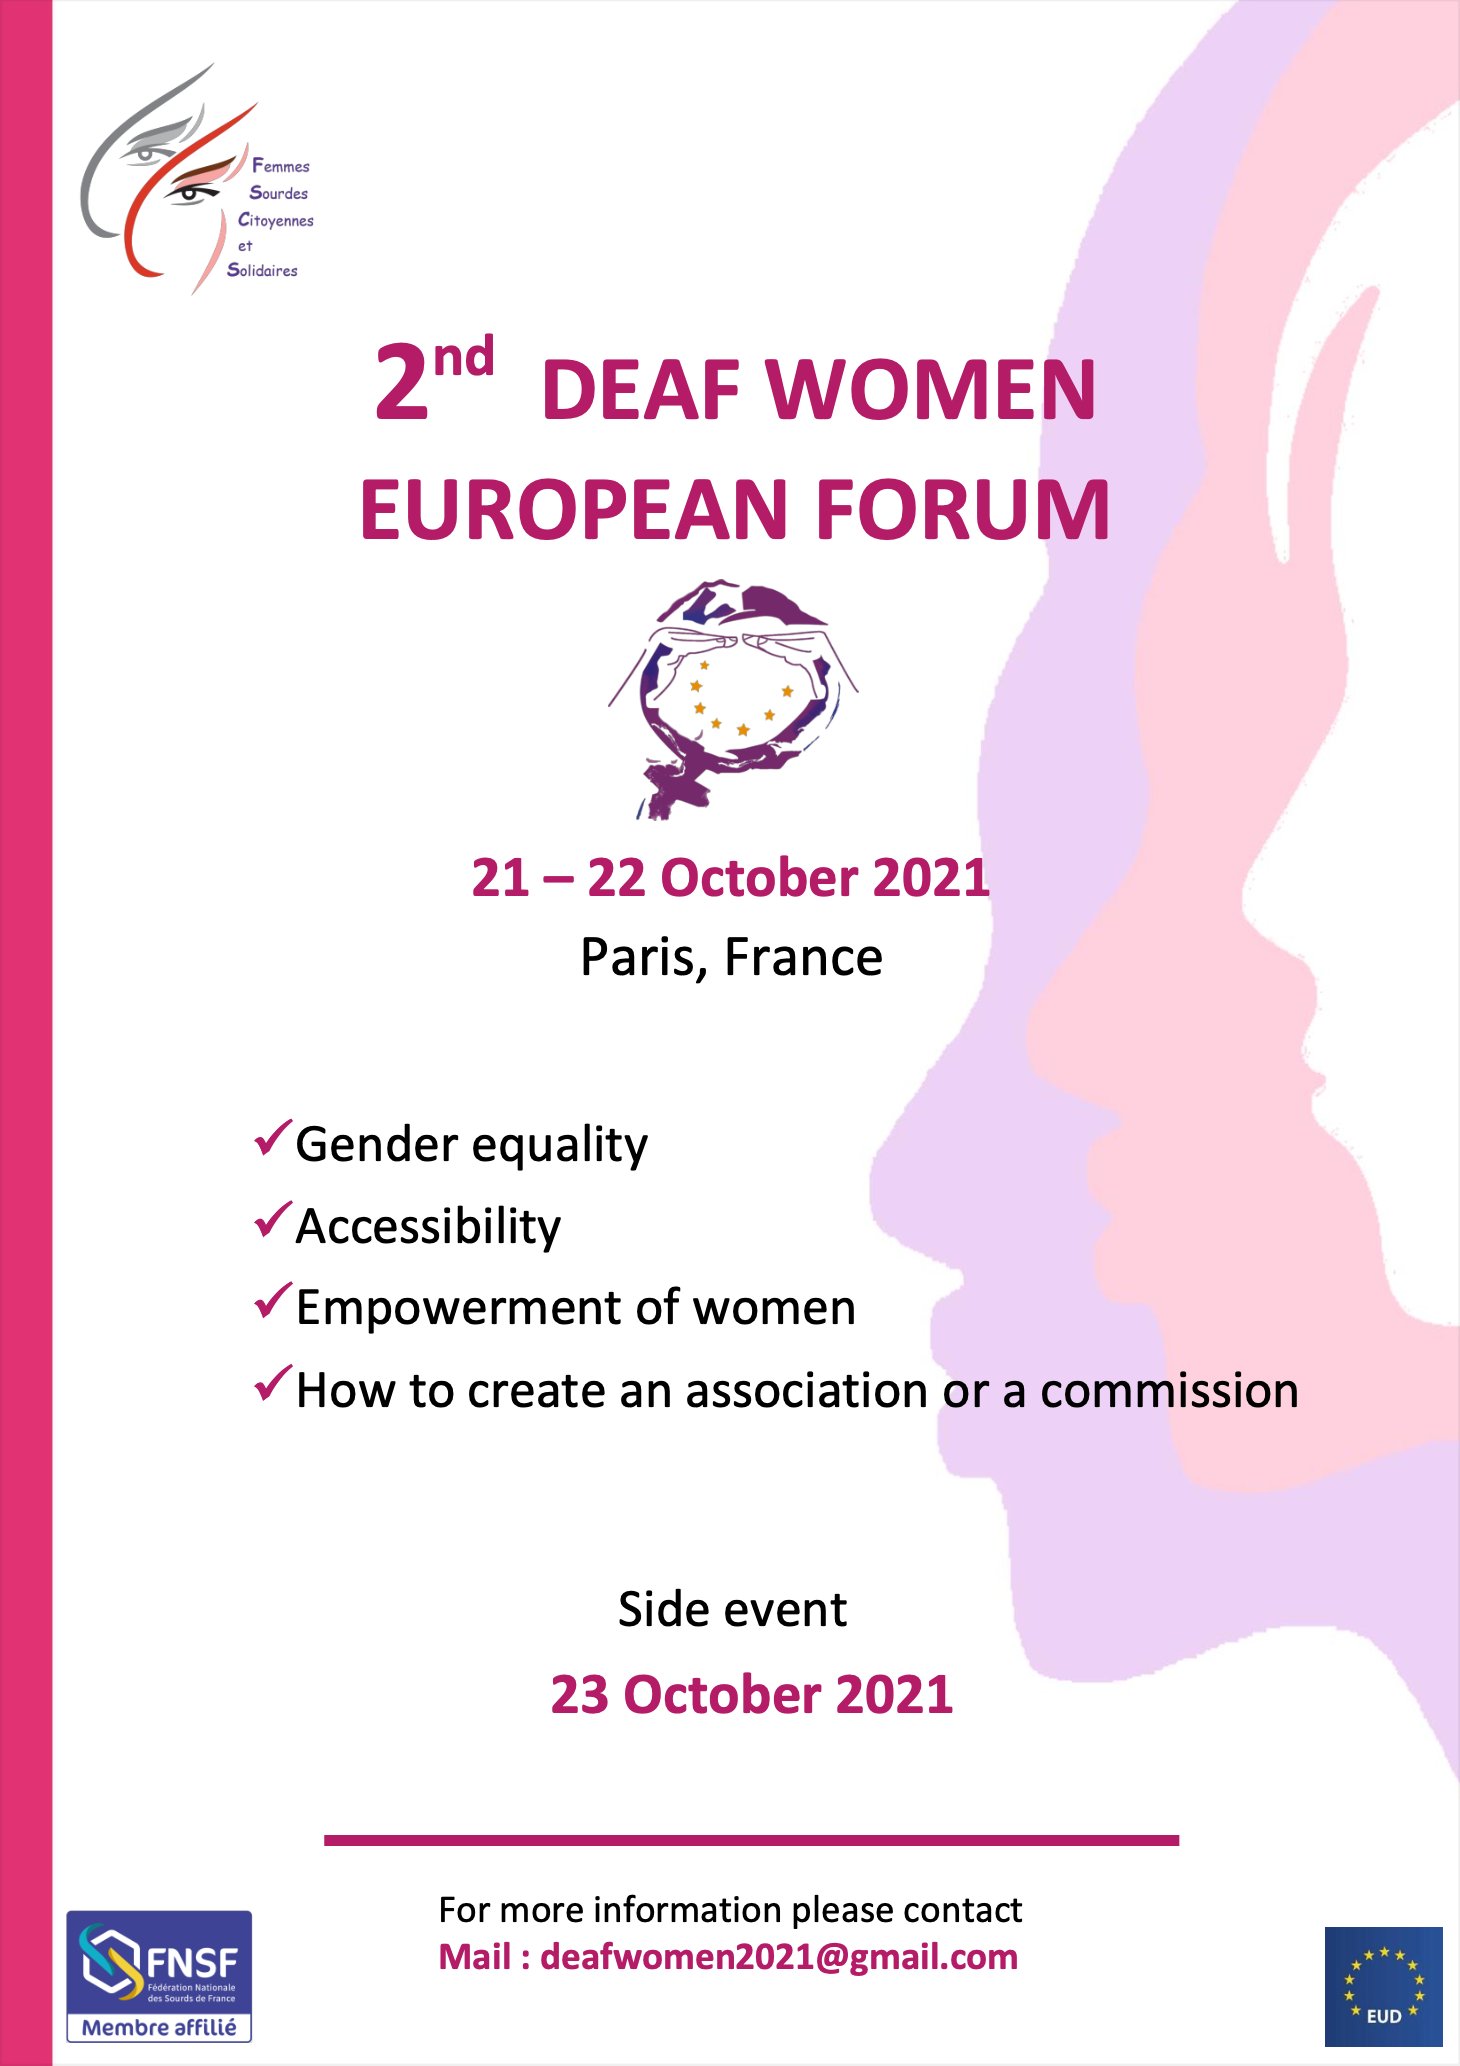 Forum Europa de Mujeres Sordas